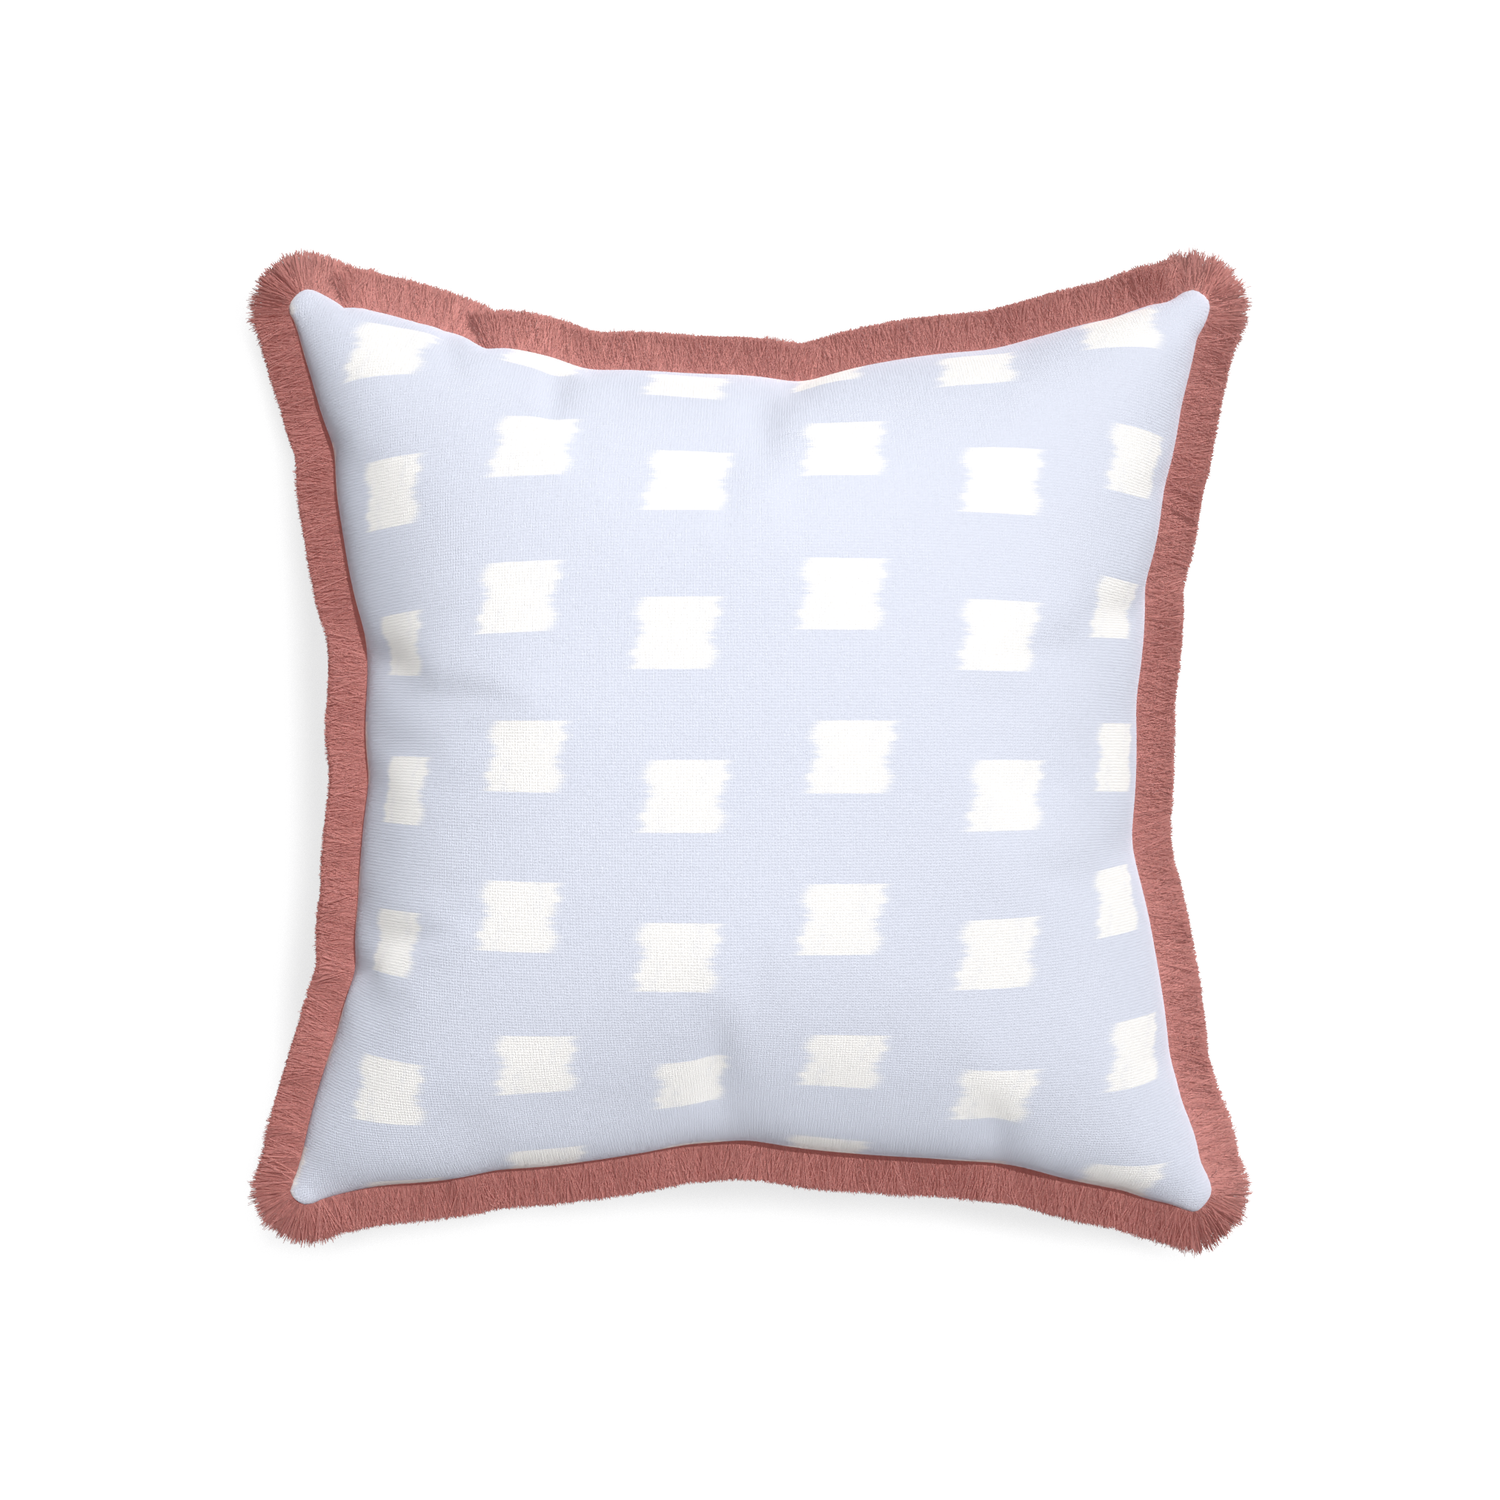 20-square denton custom pillow with d fringe on white background